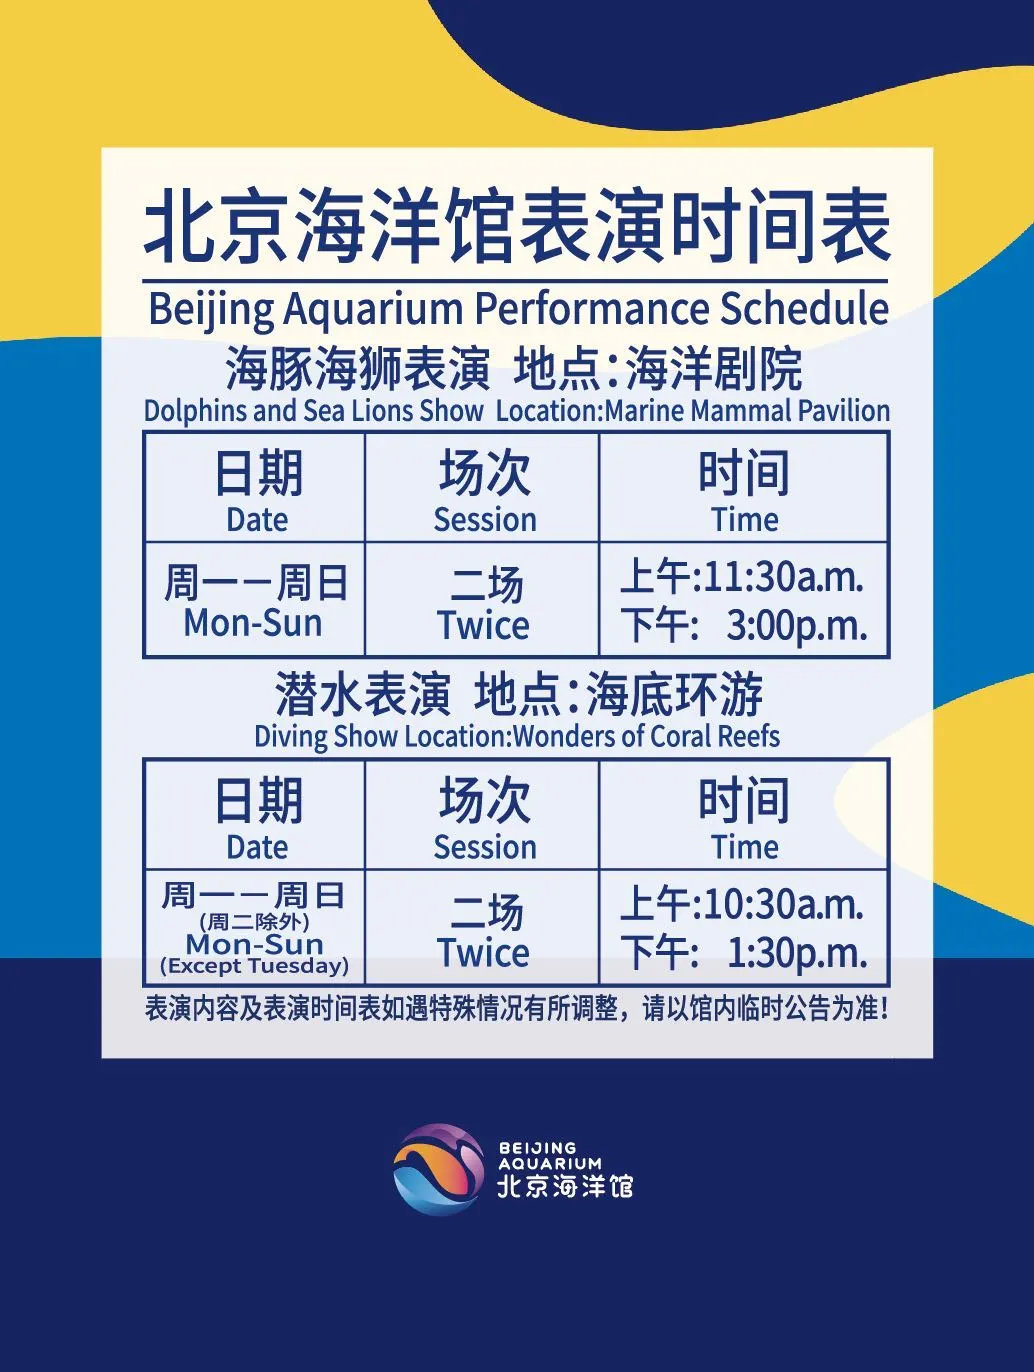 关于北京海洋馆于1月15日开放的公告